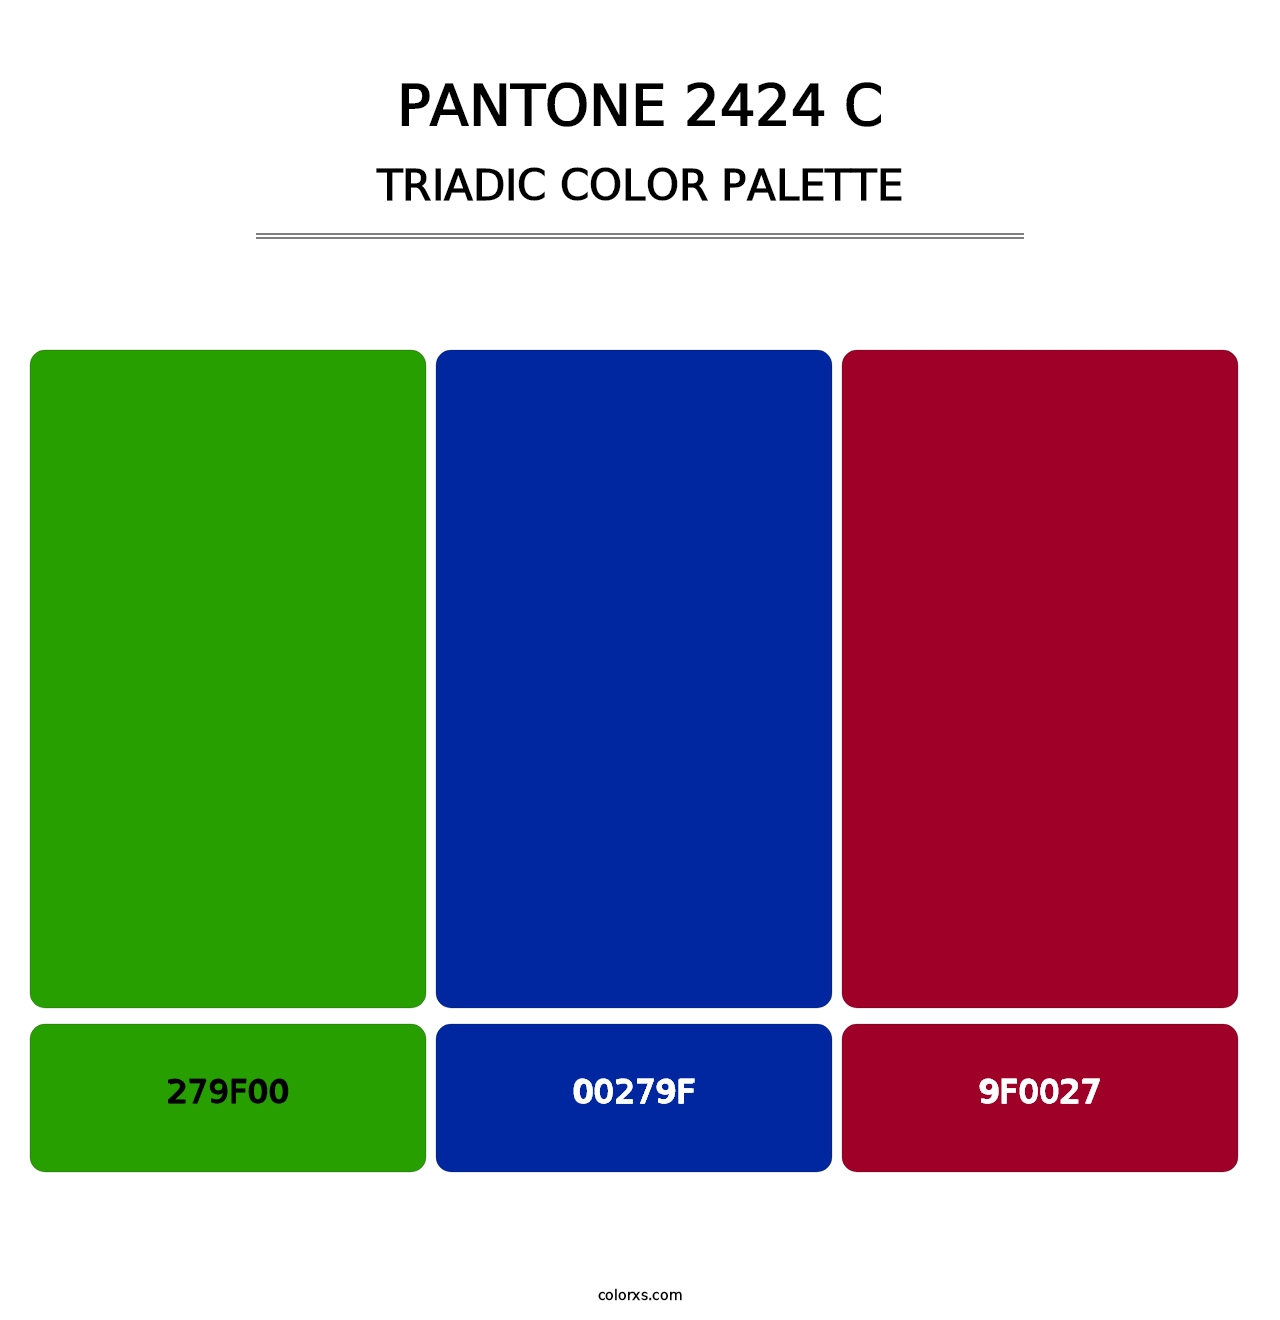 PANTONE 2424 C - Triadic Color Palette